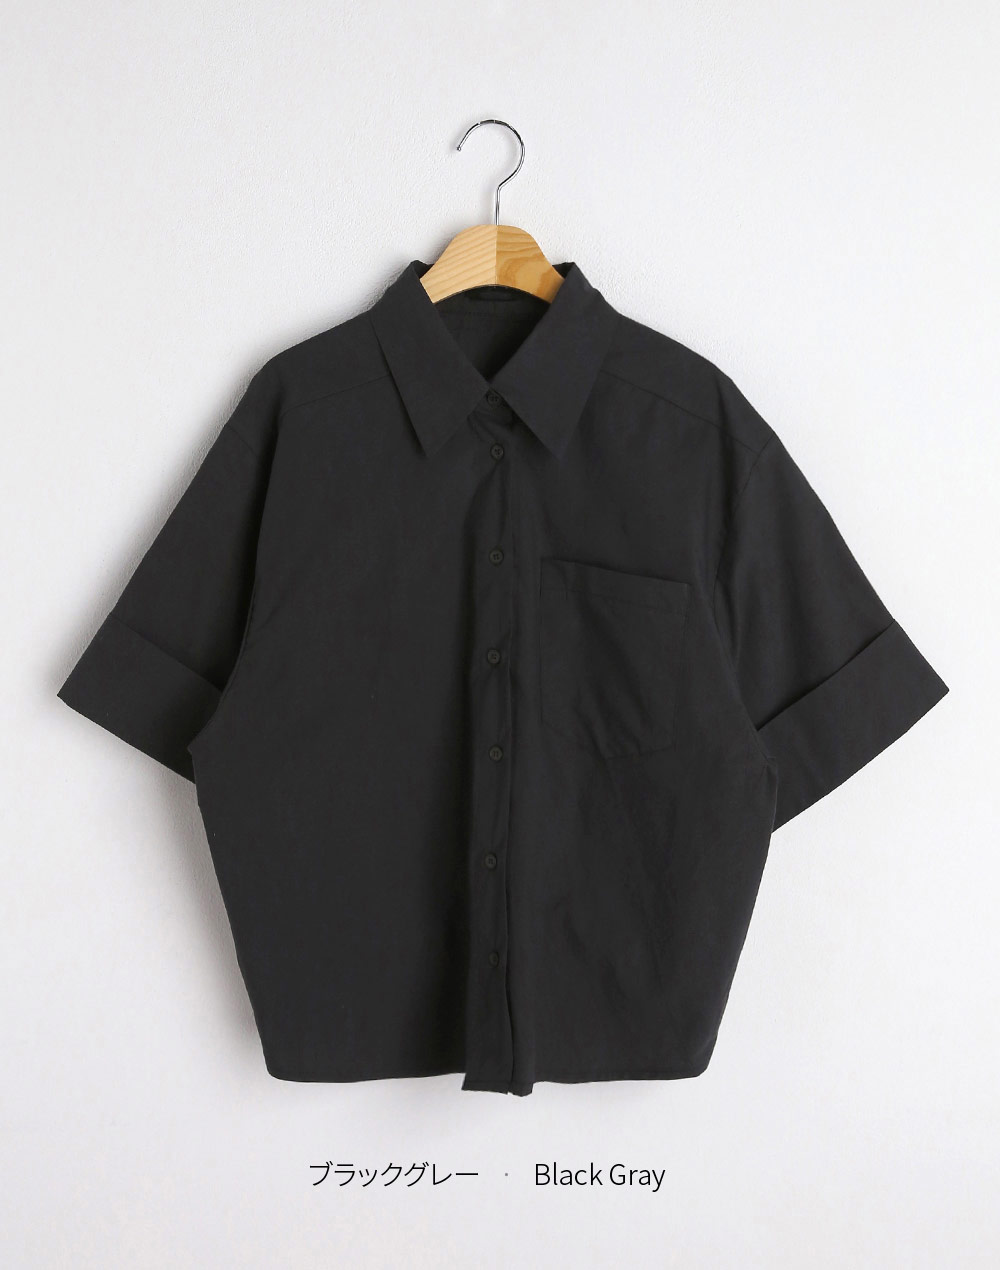 バックオープンシャツ・t281832（ブラウス/シャツ）| u_us12 | 東京ガールズマーケット